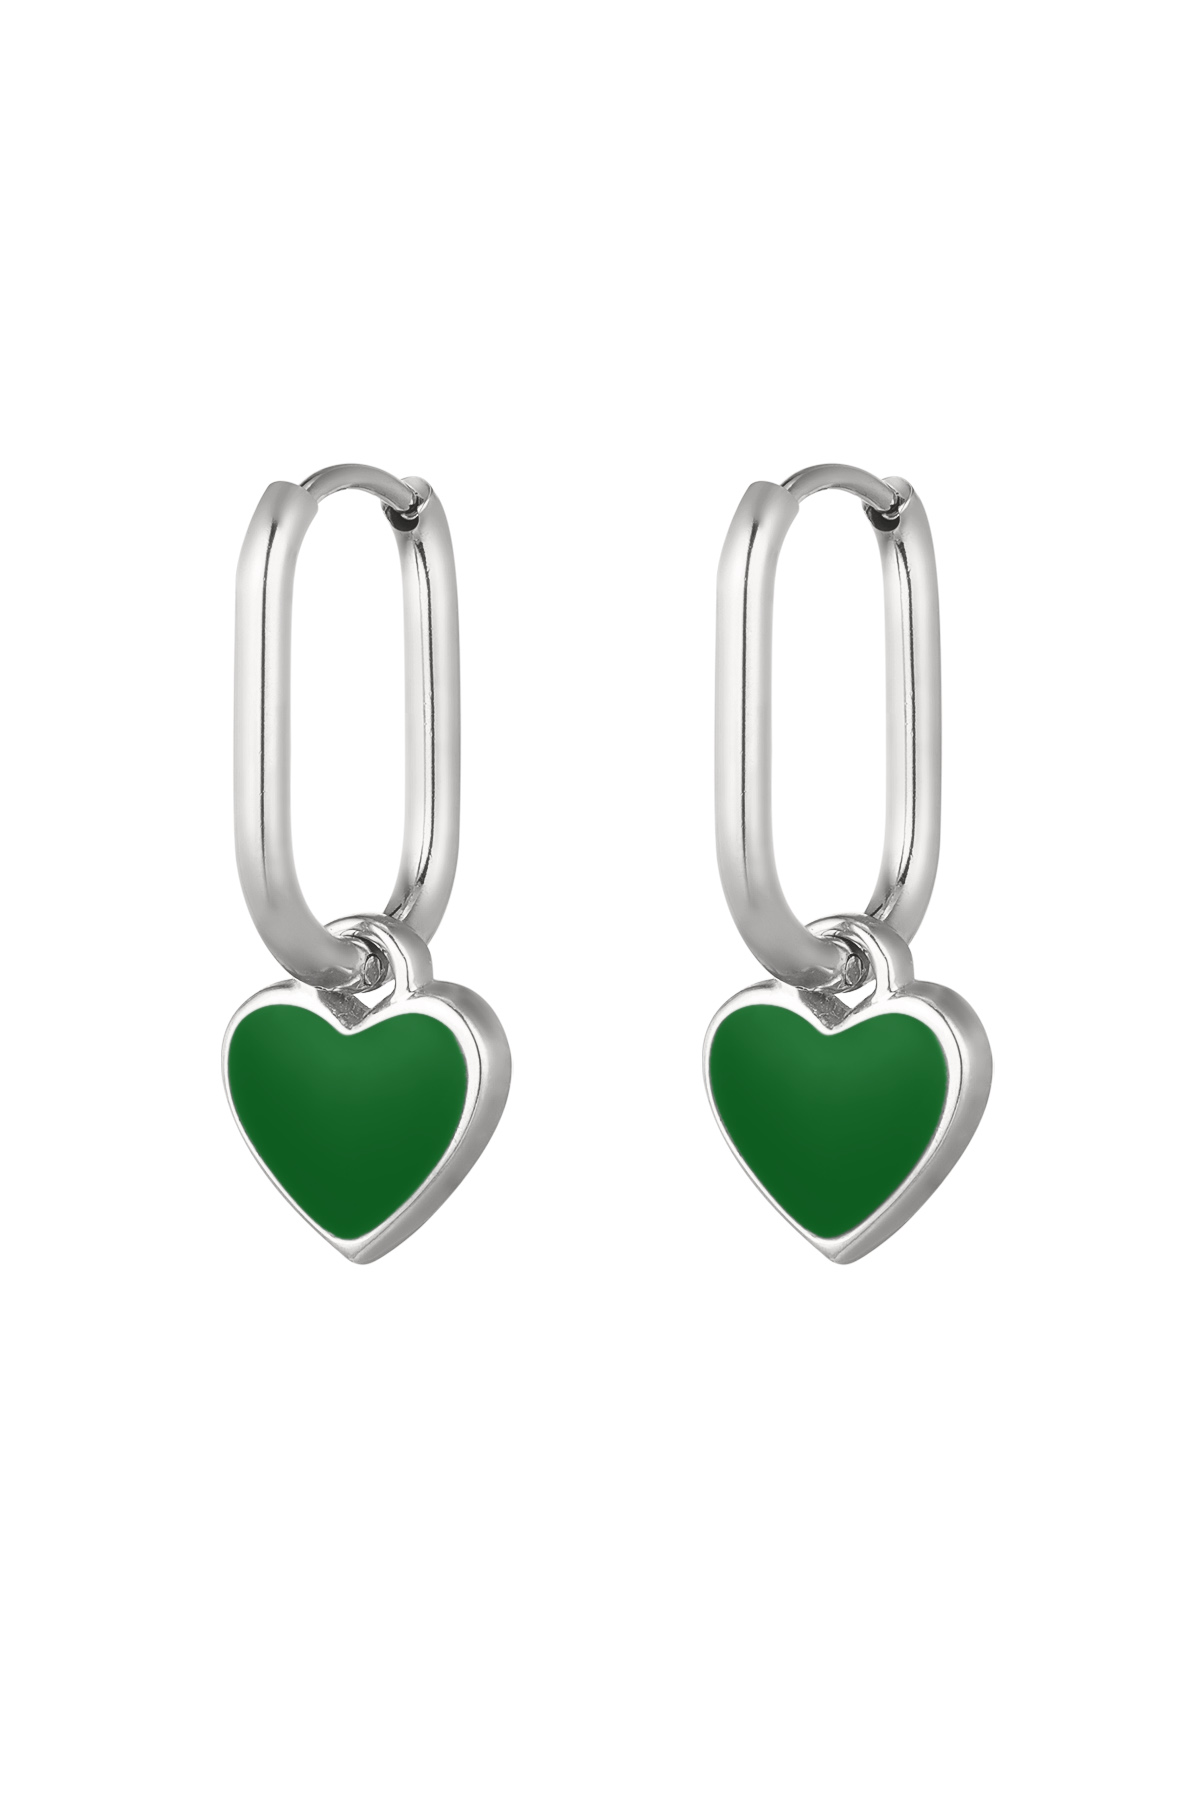 Renkli kalp küpeler Yeşil/gümüş Paslanmaz Çelik h5 